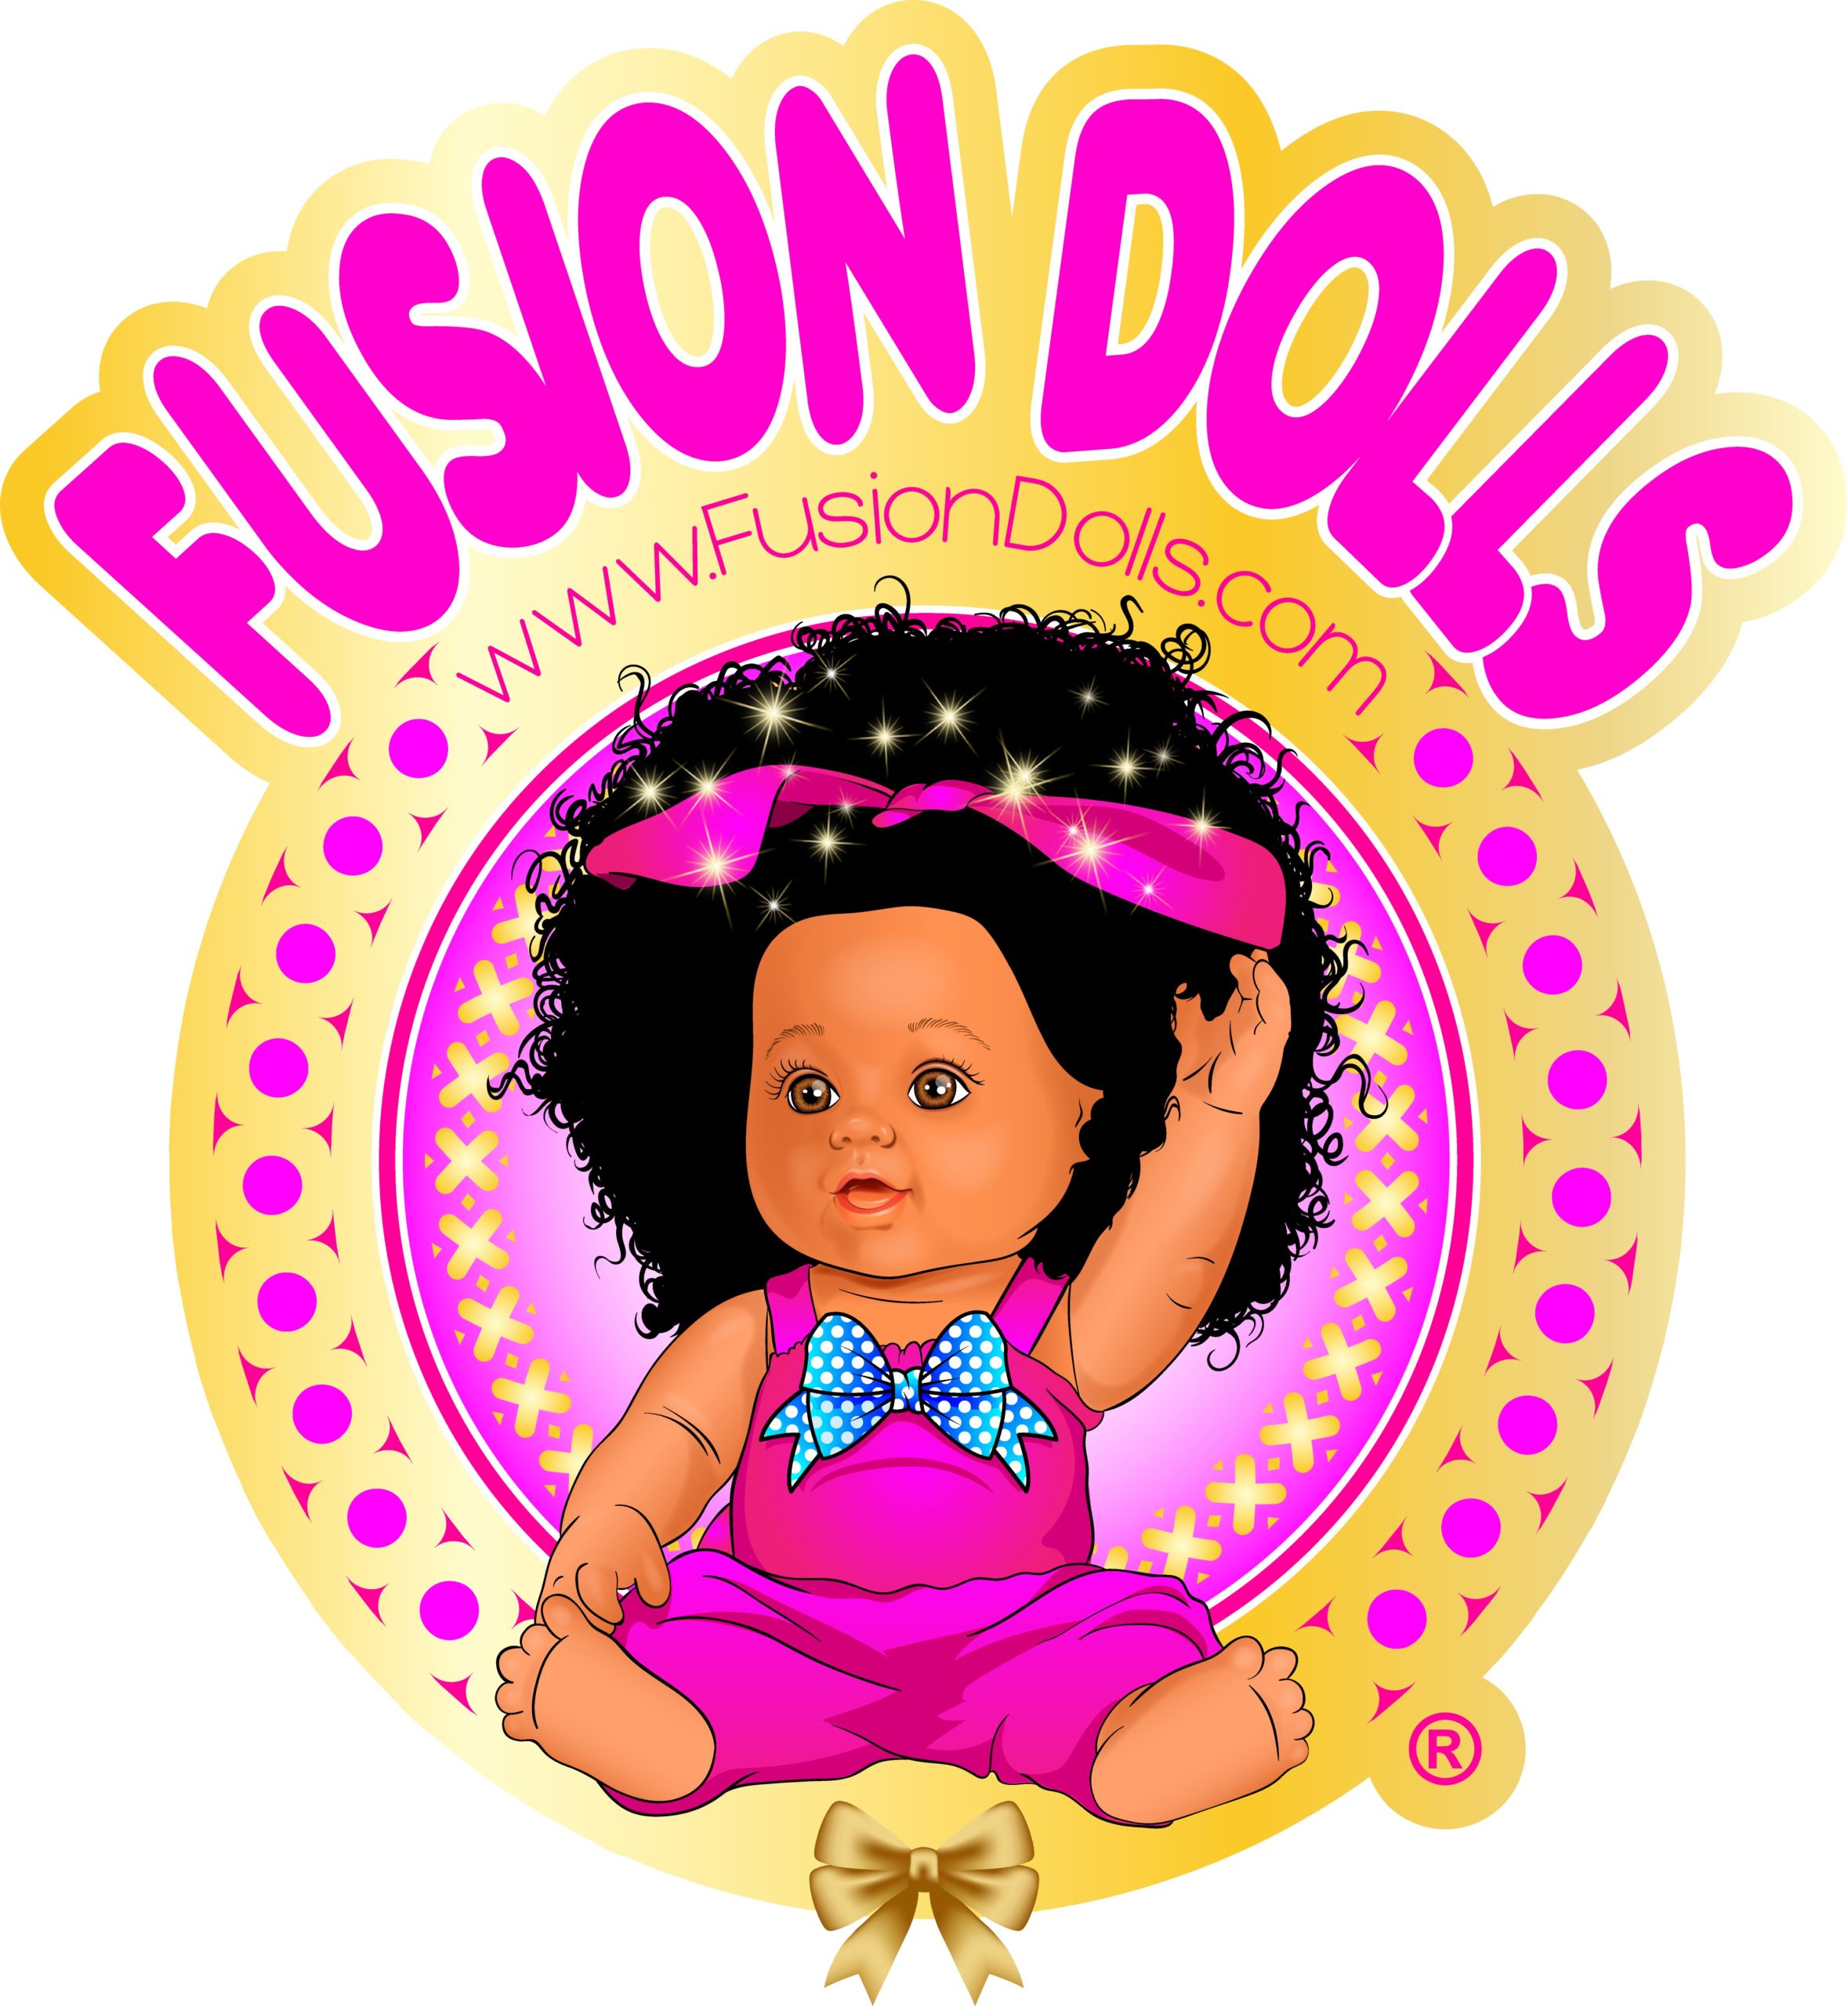 Fusion Dolls